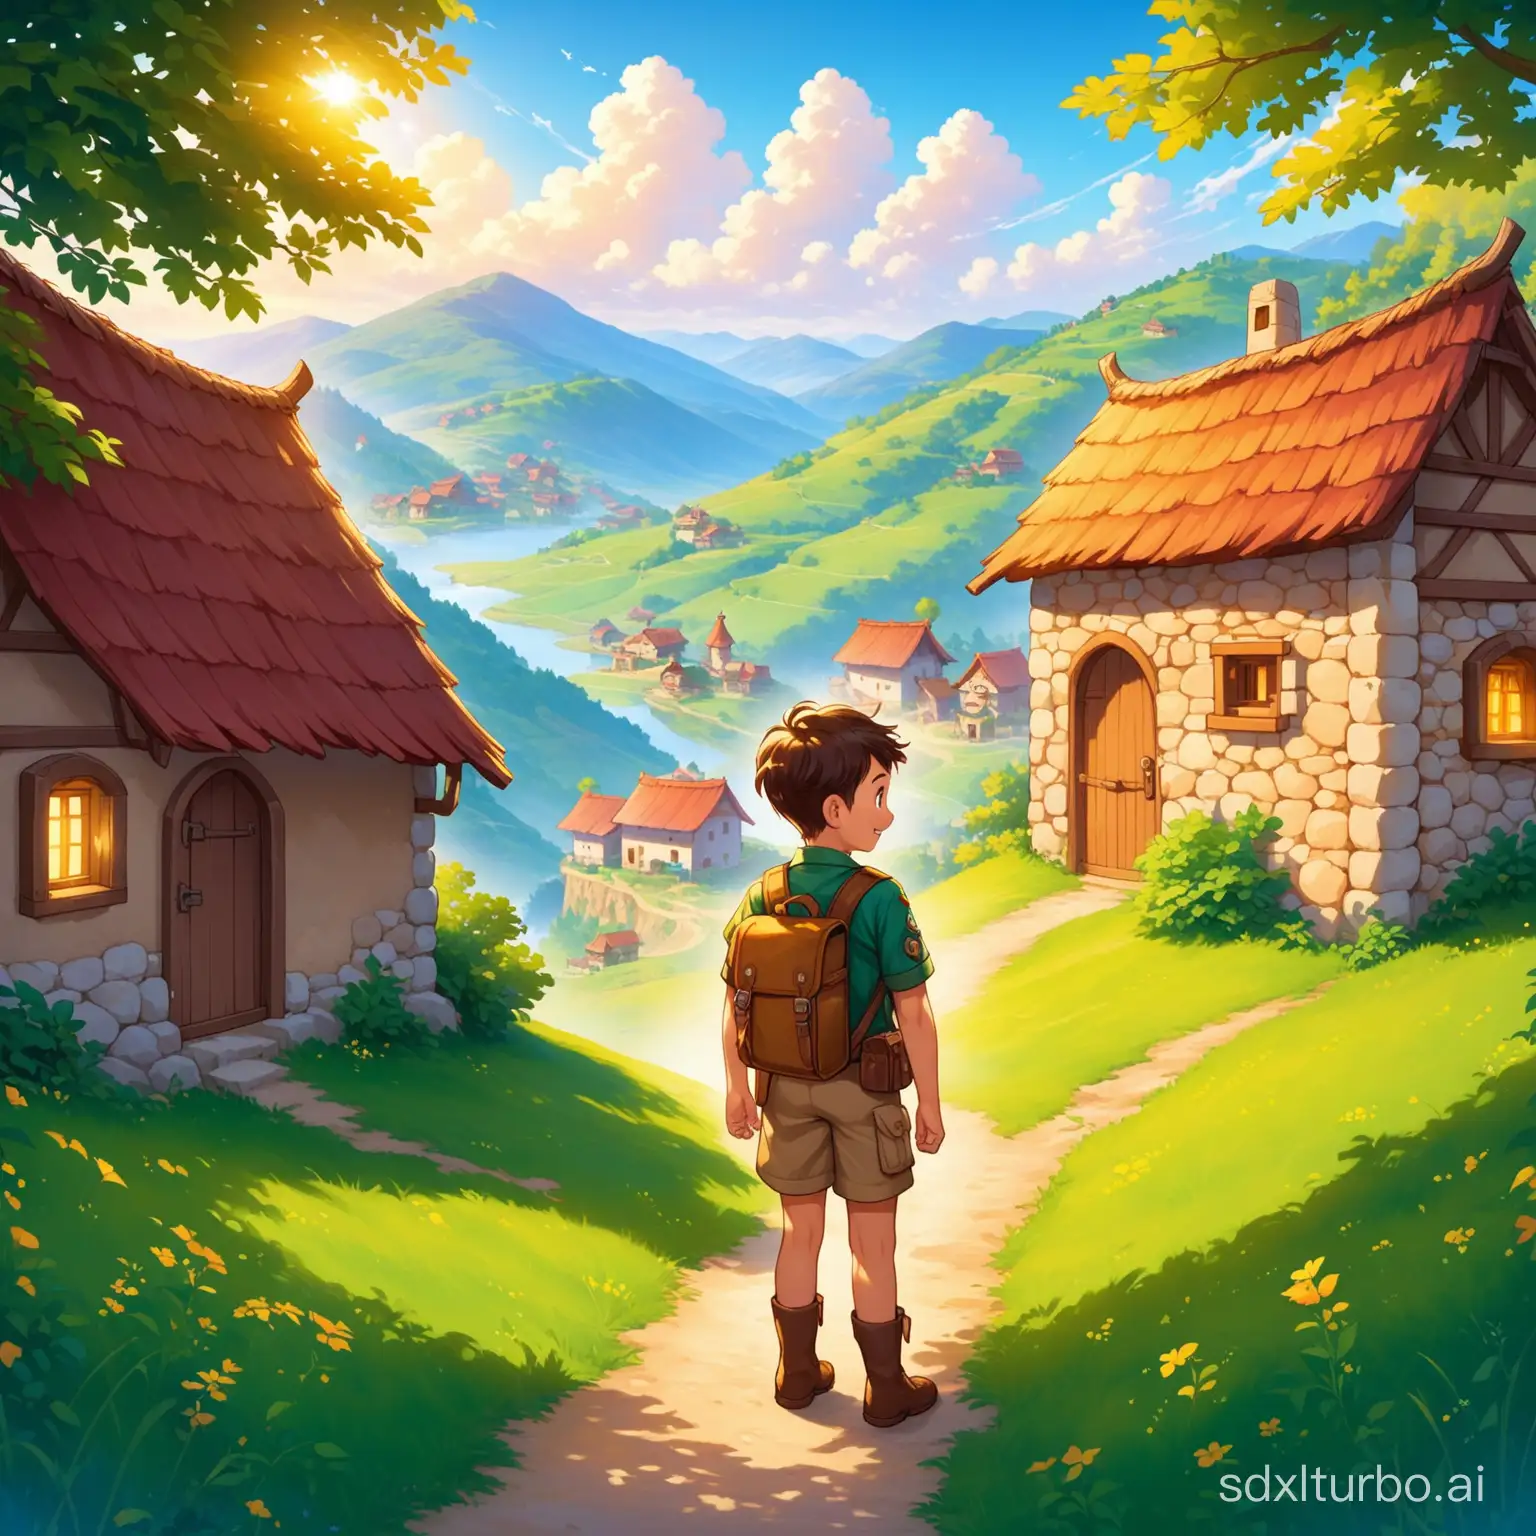 En un pequeño pueblo en las colinas, conocemos a nuestro valiente chico explorador, Lucas.
Sueña con aventuras emocionantes y descubrimientos legendarios.